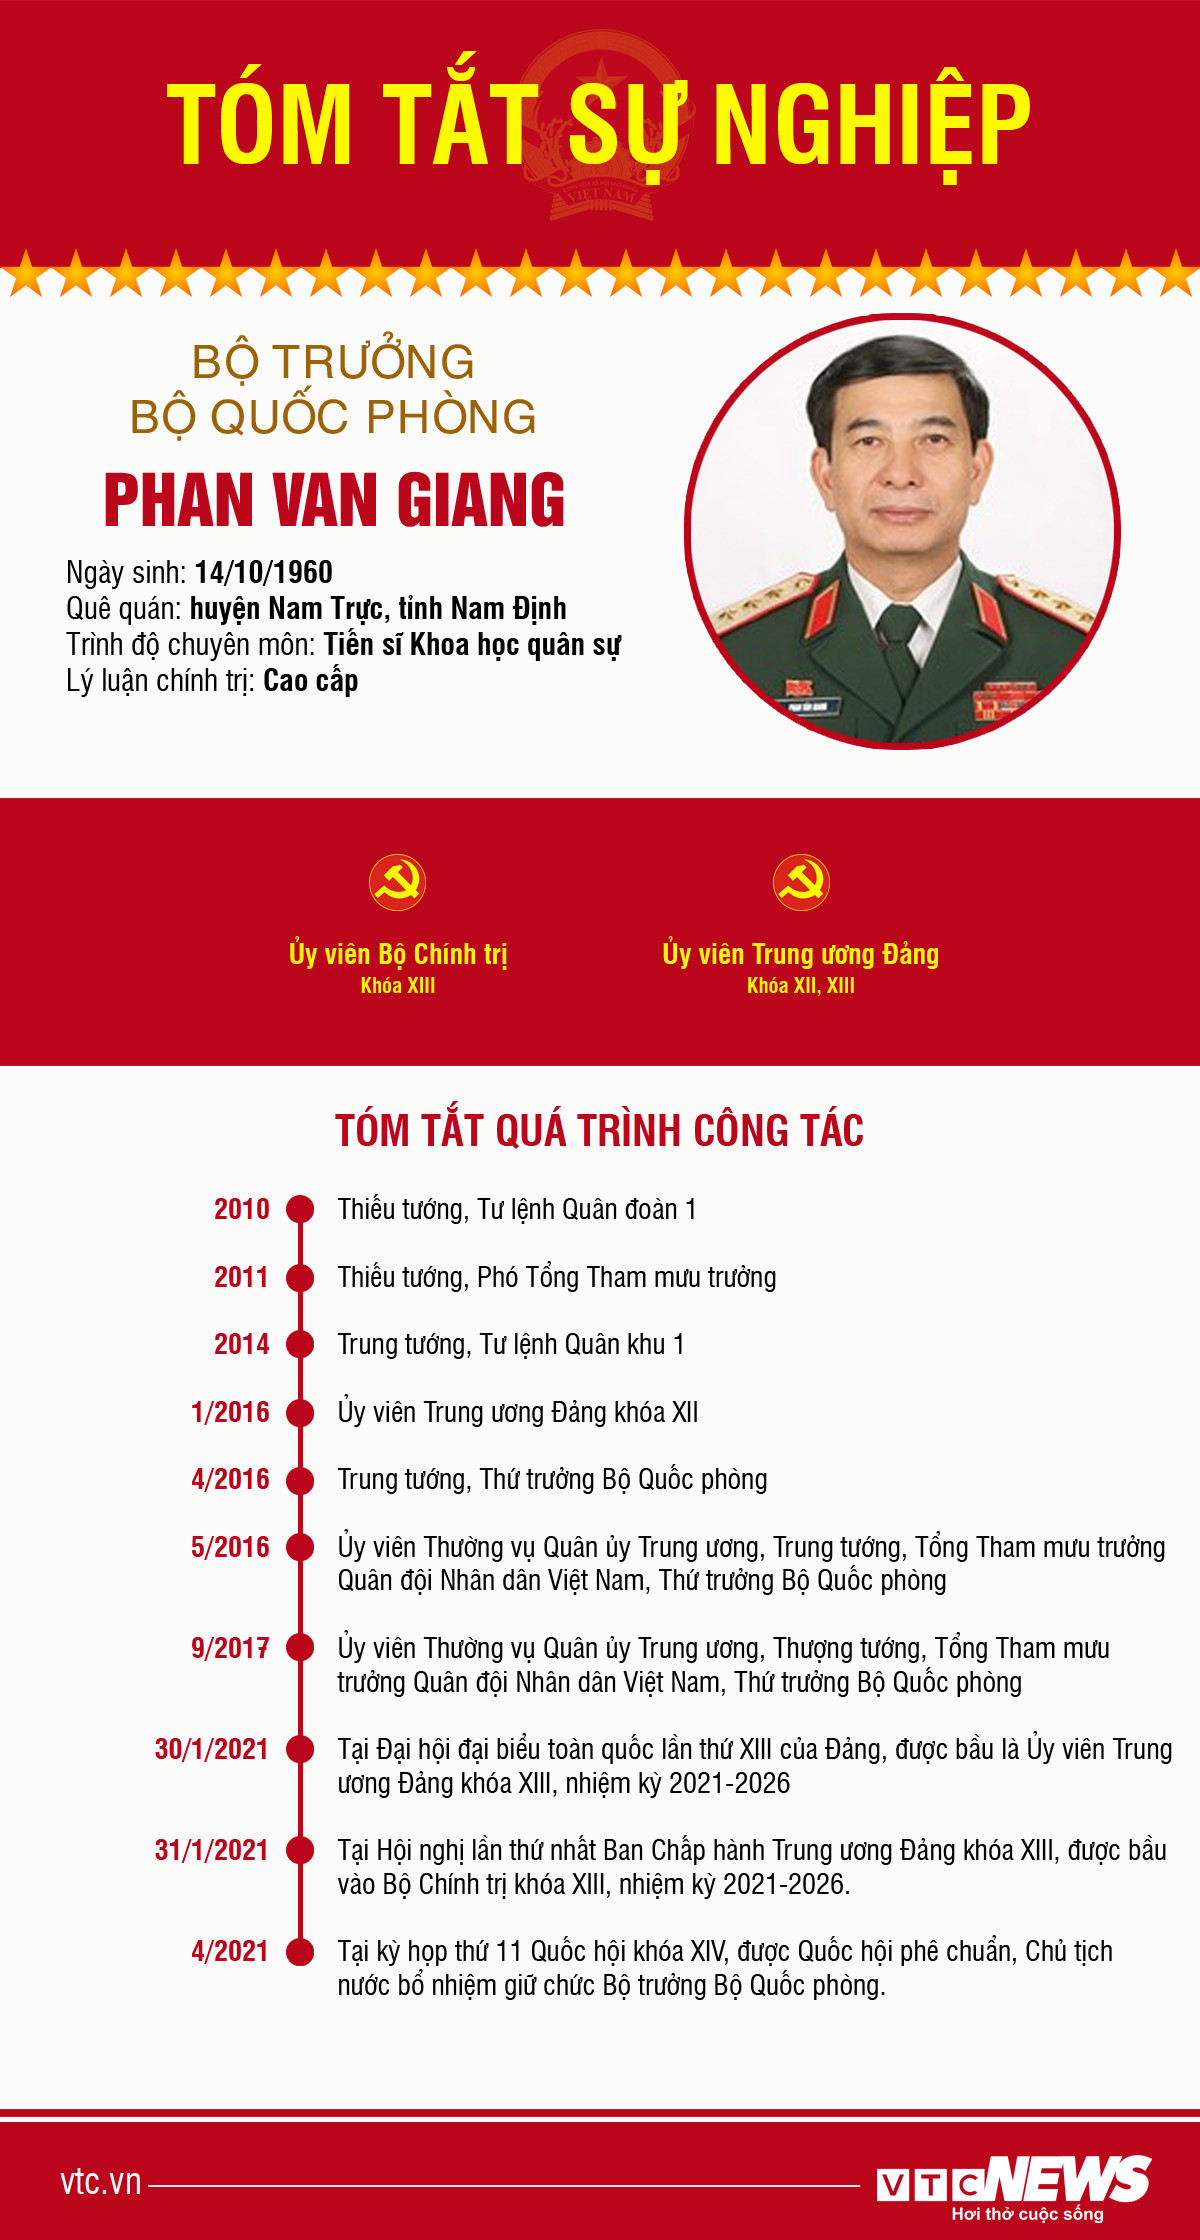 Infographic: Sự nghiệp Bộ trưởng Quốc phòng Phan Văn Giang - 1